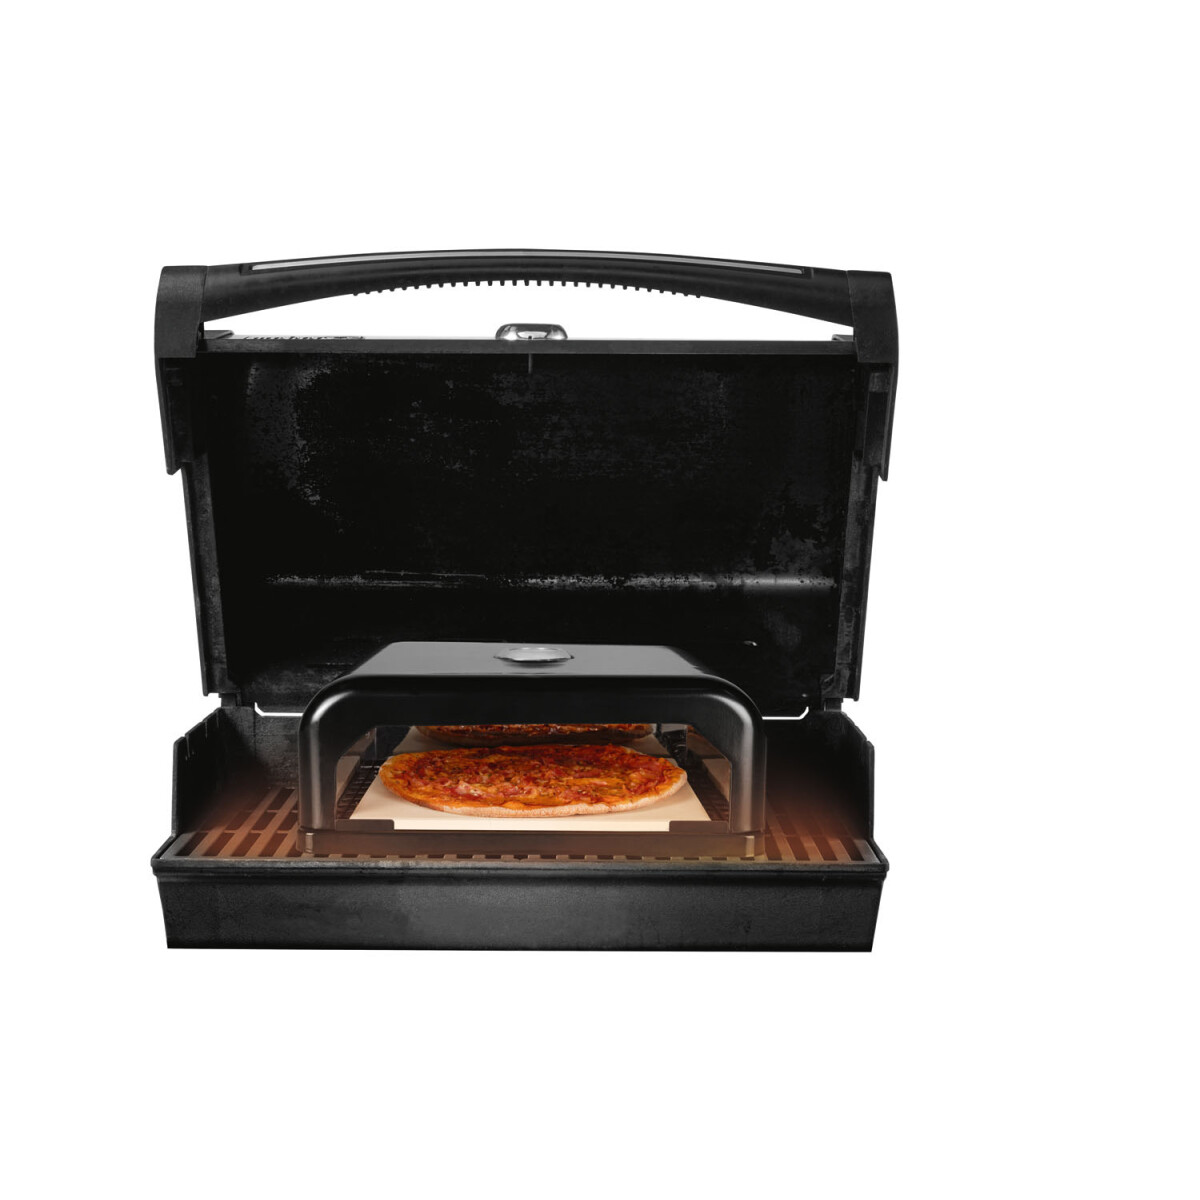 GRILLMEISTER Pizzaofen-Grillaufsatz, emailliert, neuwertig, € 53,99 mit - Thermostat B-Ware